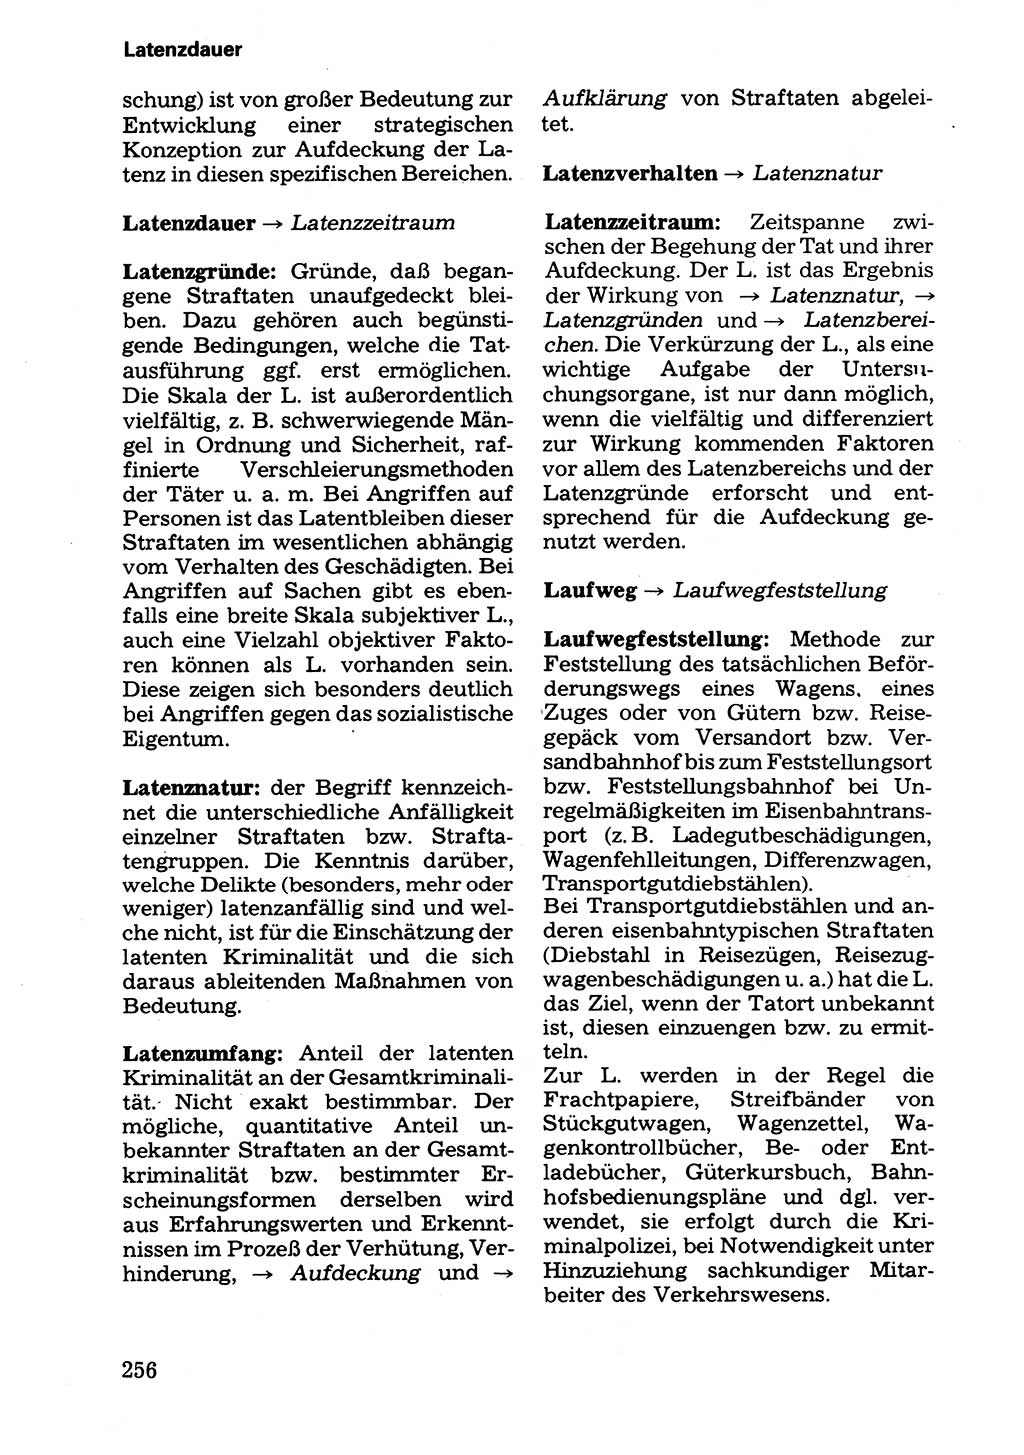 Wörterbuch der sozialistischen Kriminalistik [Deutsche Demokratische Republik (DDR)] 1981, Seite 256 (Wb. soz. Krim. DDR 1981, S. 256)